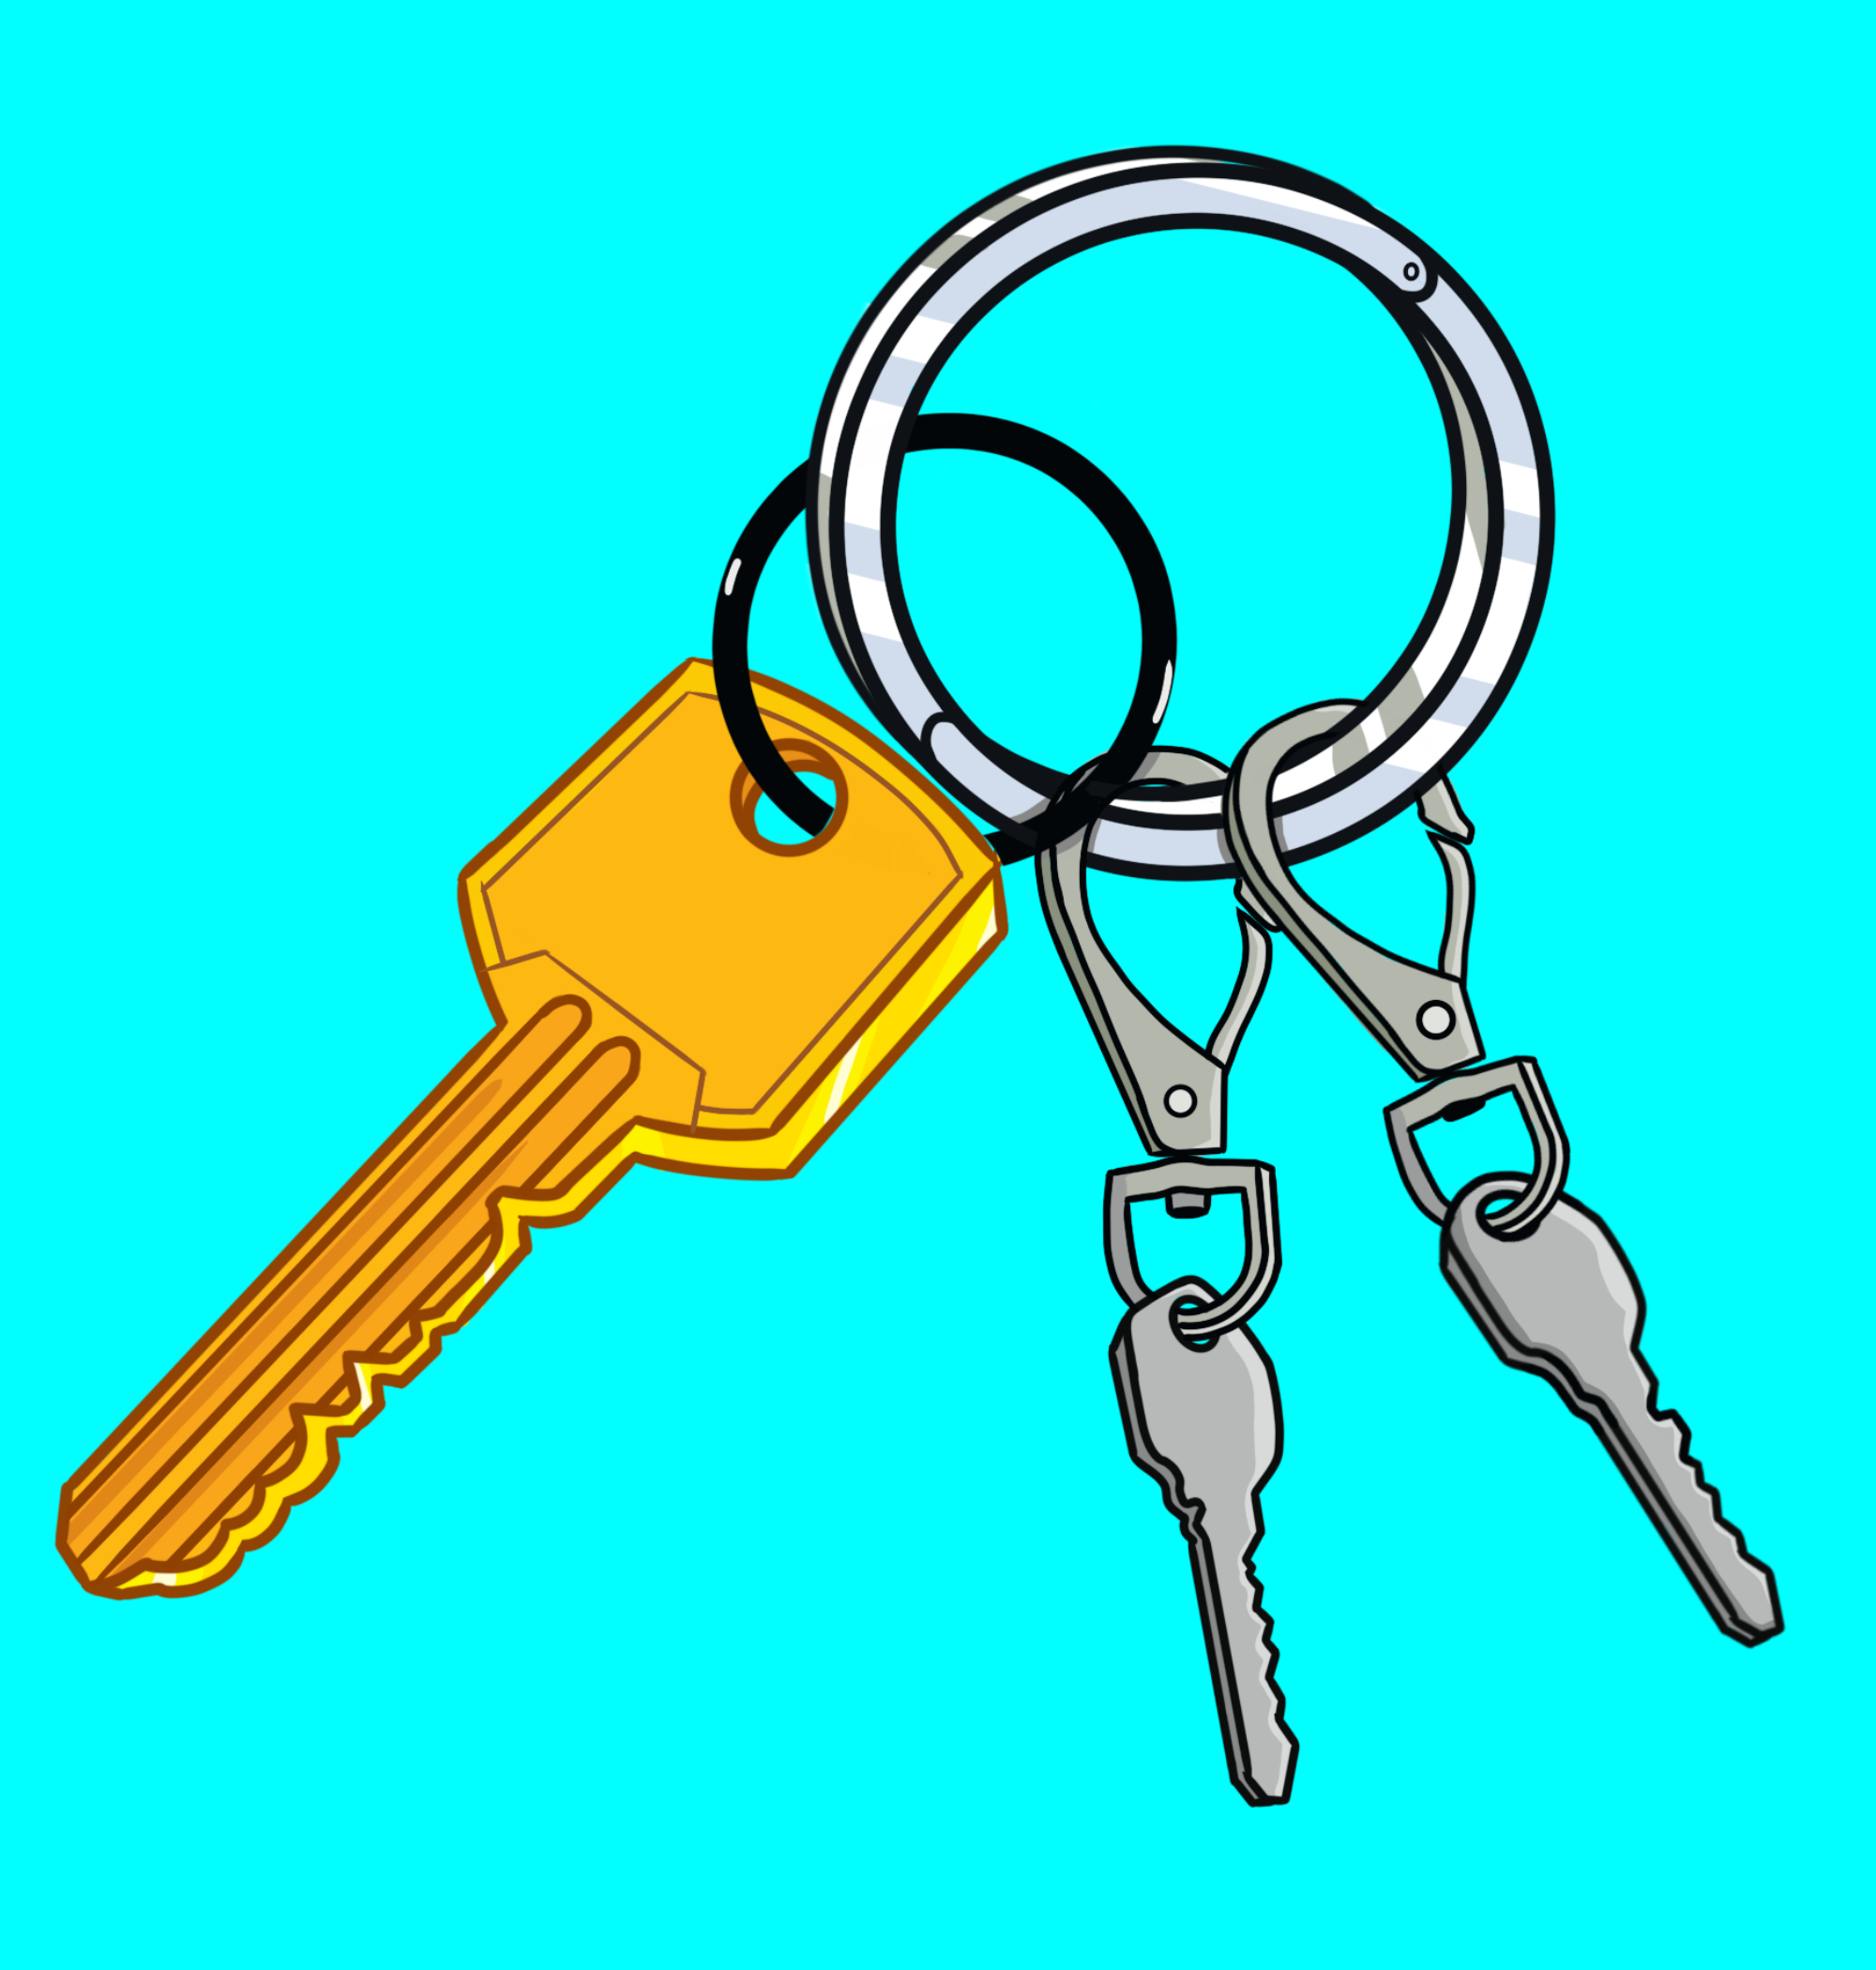 세 개의 키가 있는 키 체인입니다. 큰 금색 키는 NEAR의 전체 액세스 키를 나타냅니다. 다른 두 개의 키는 회색이고 더 작으며 분리 가능한 래치가 있습니다. 함수 호출 액세스 키를 나타냅니다. alcantara_gabriel.near 그림